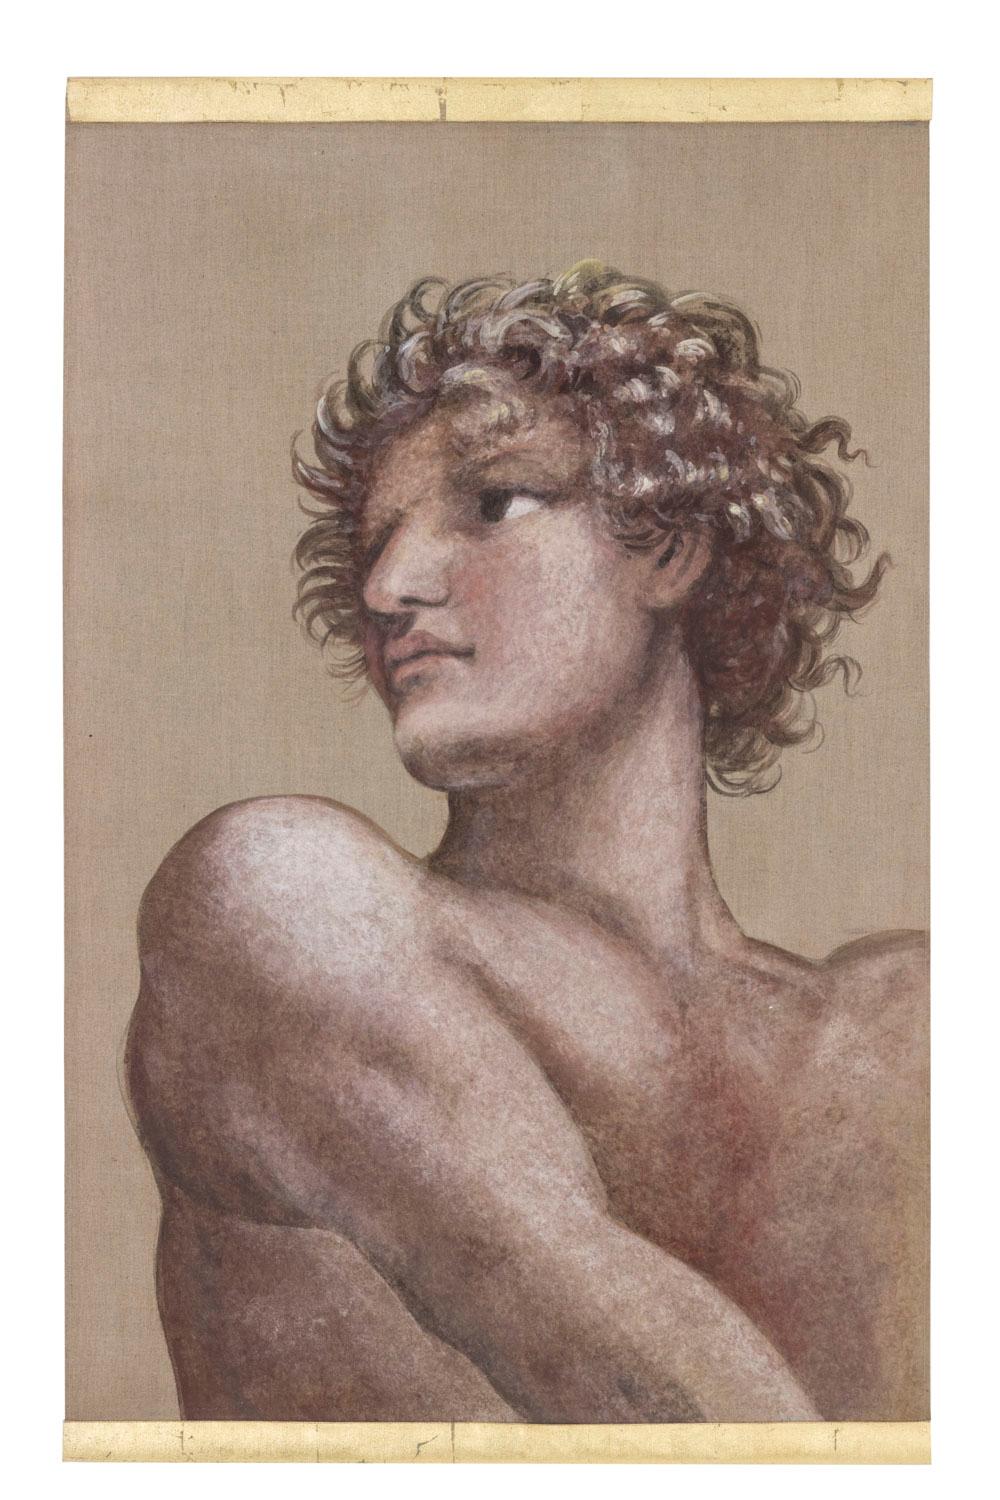 Gemalte Leinwand, die einen Mann im Stil Michelangelos darstellt, Boden- und Seitenansicht. Er ist nackt, hat Muskeln, die an ein Gemälde aus der italienischen Renaissance erinnern, er hat lockiges Haar und dreht den Kopf nach links. Brauner